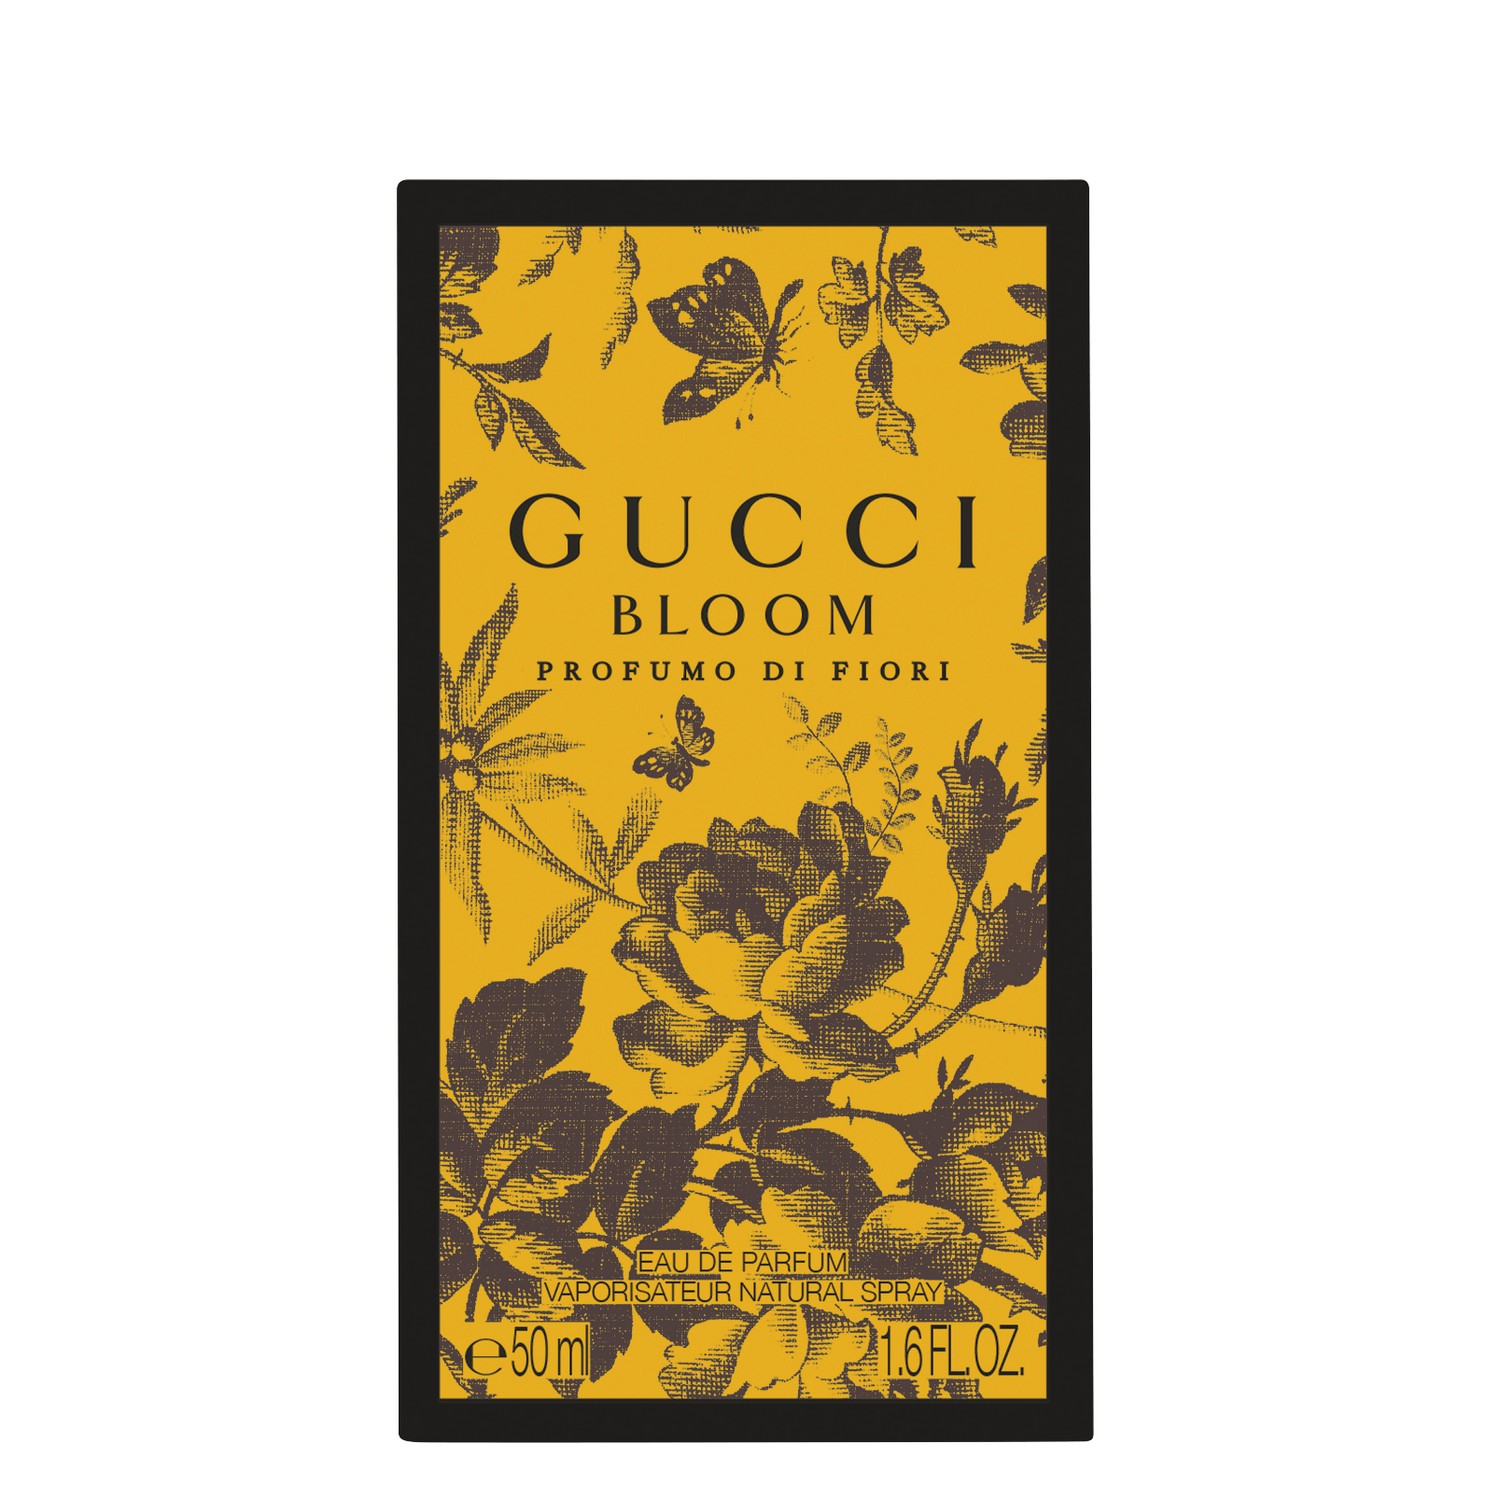 Gucci Bloom Profumo di Fiori Eau de Parfum 50ml